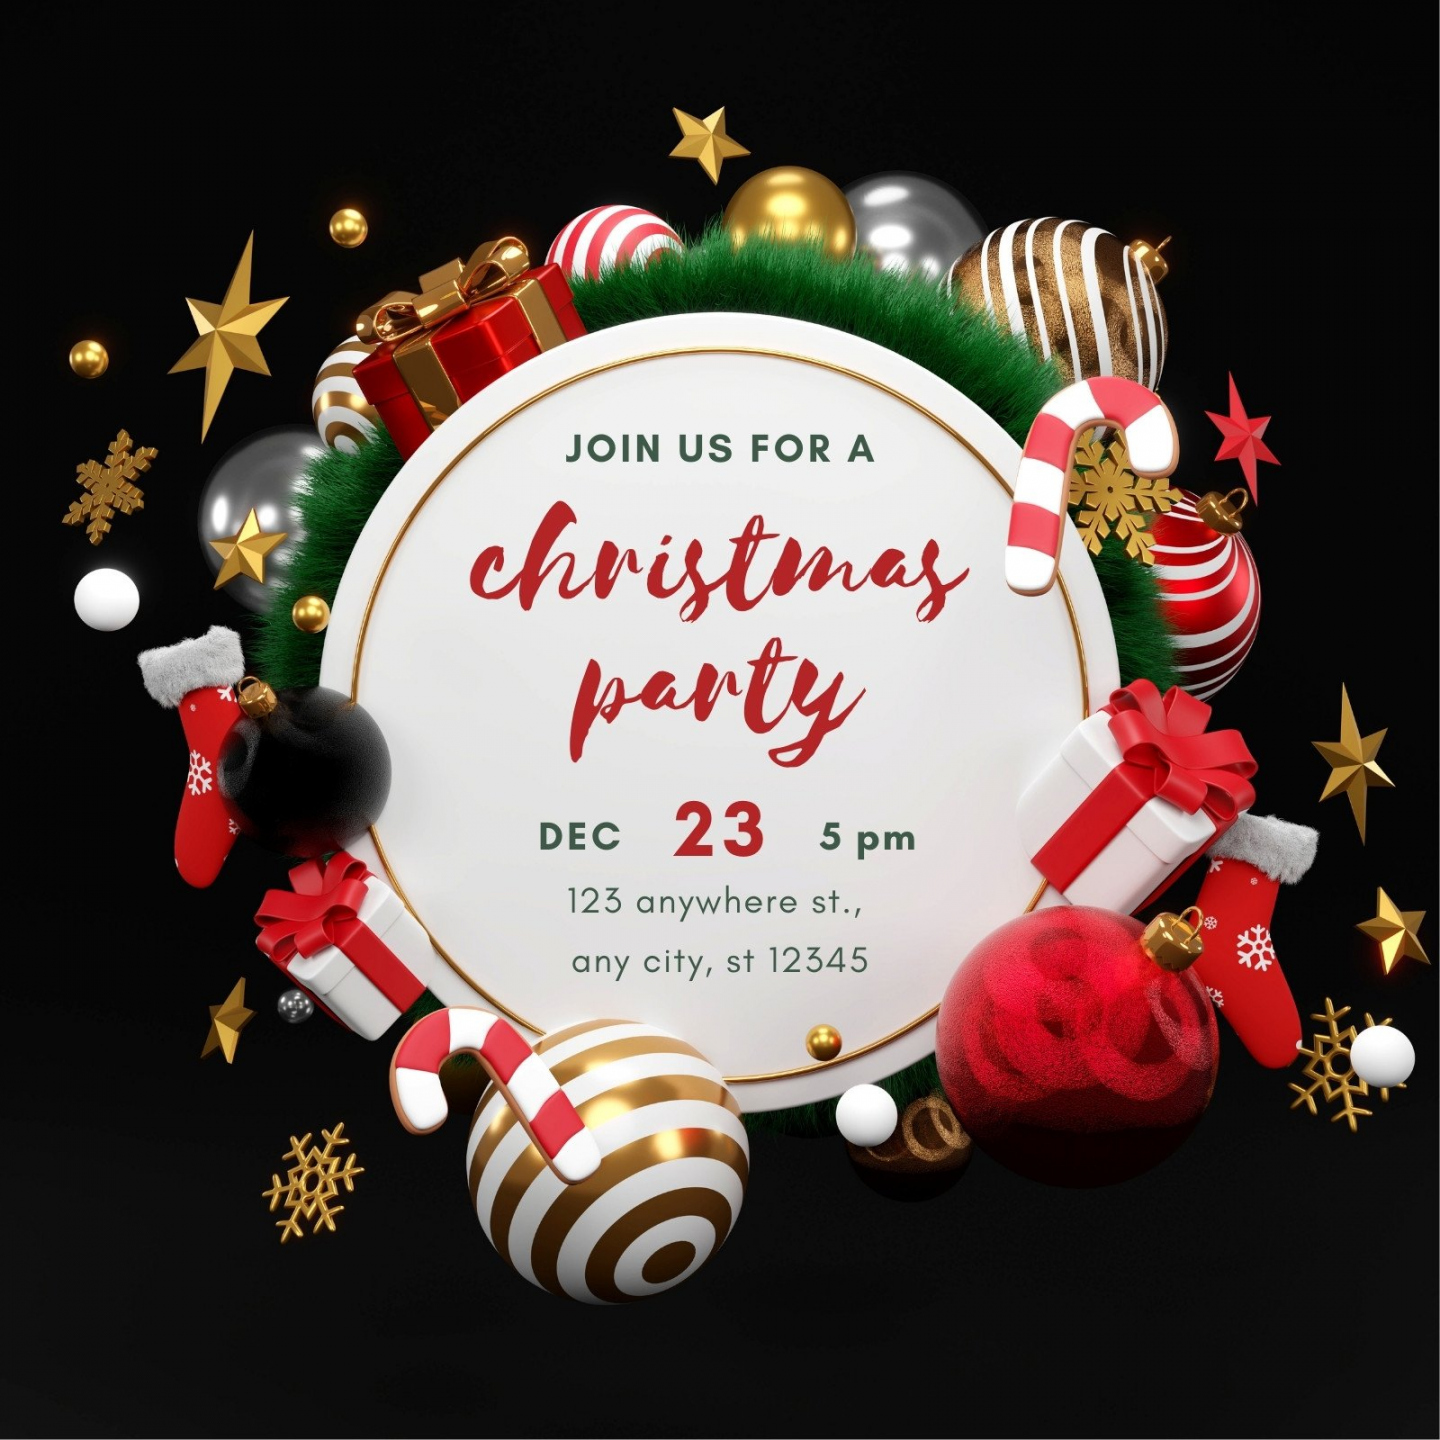 Free, printable, customizable Christmas invitation templates  Canva - FREE Printables - Free Printable Christmas Invitations